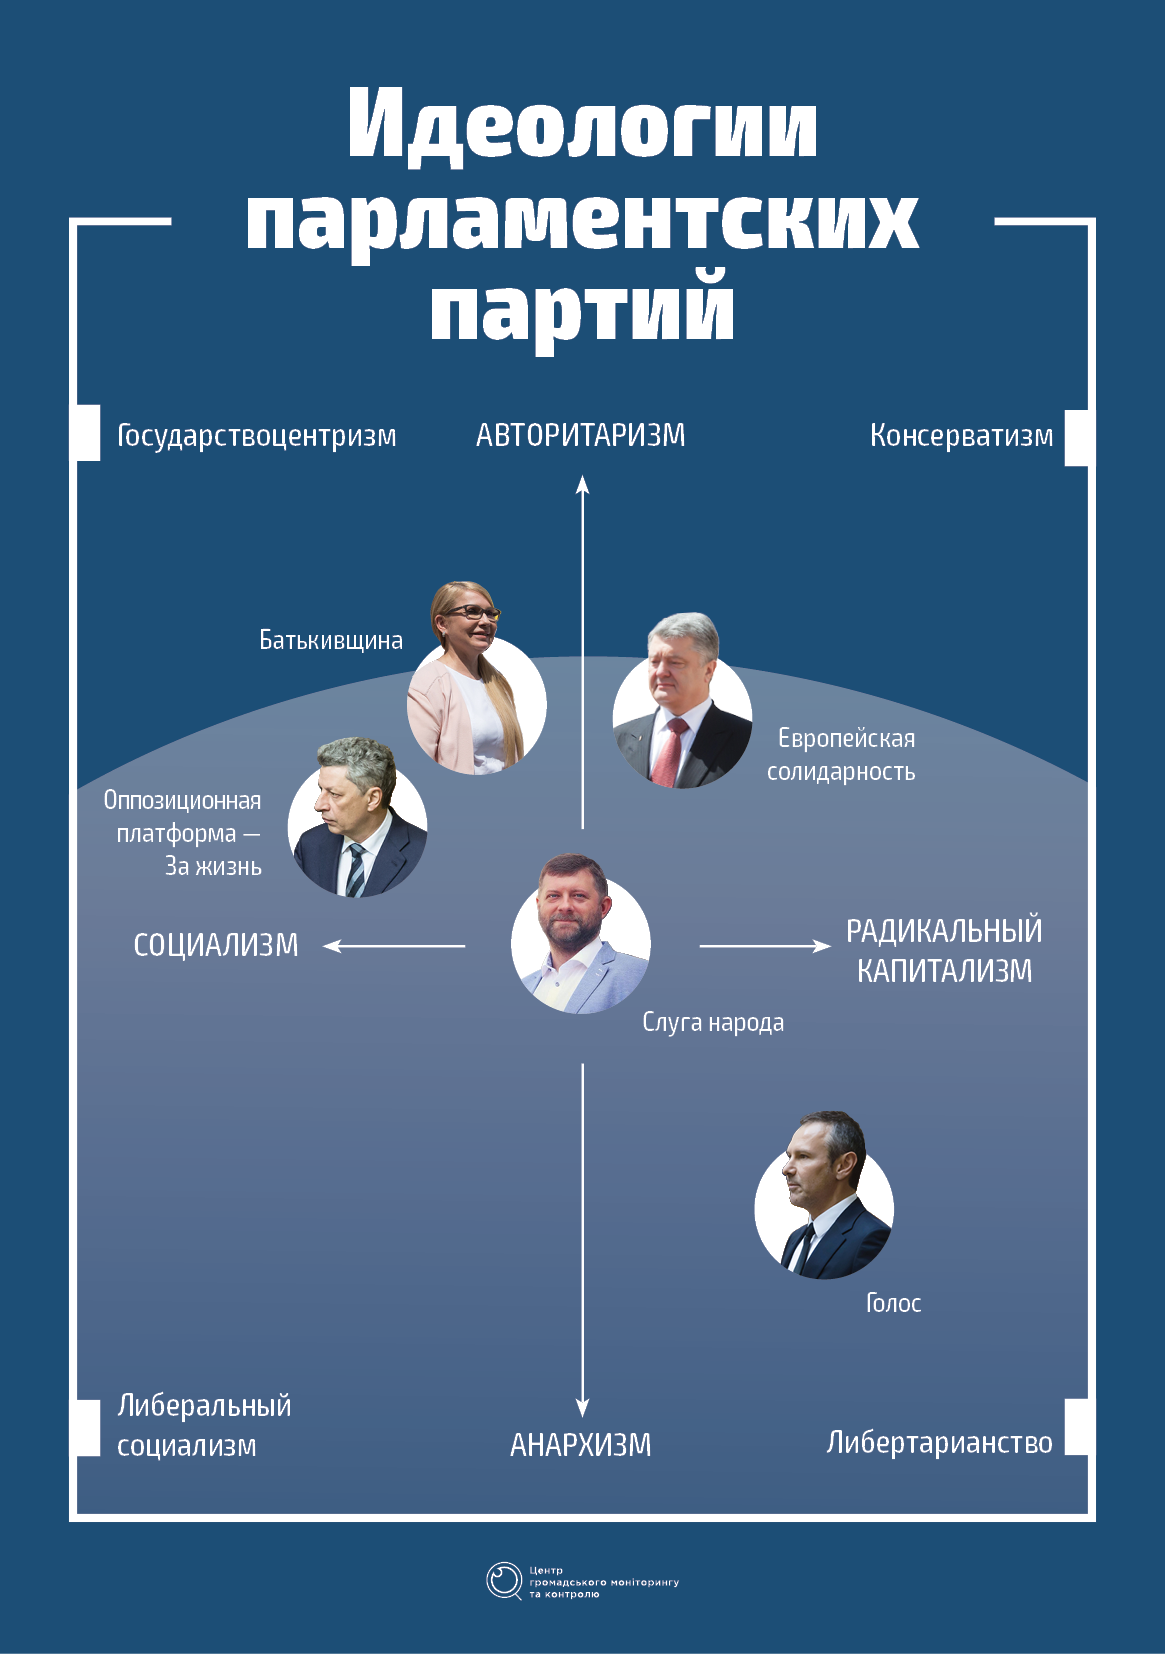 Украинский центризм». Что это значит? | Центр гражданского мониторинга и  контроля